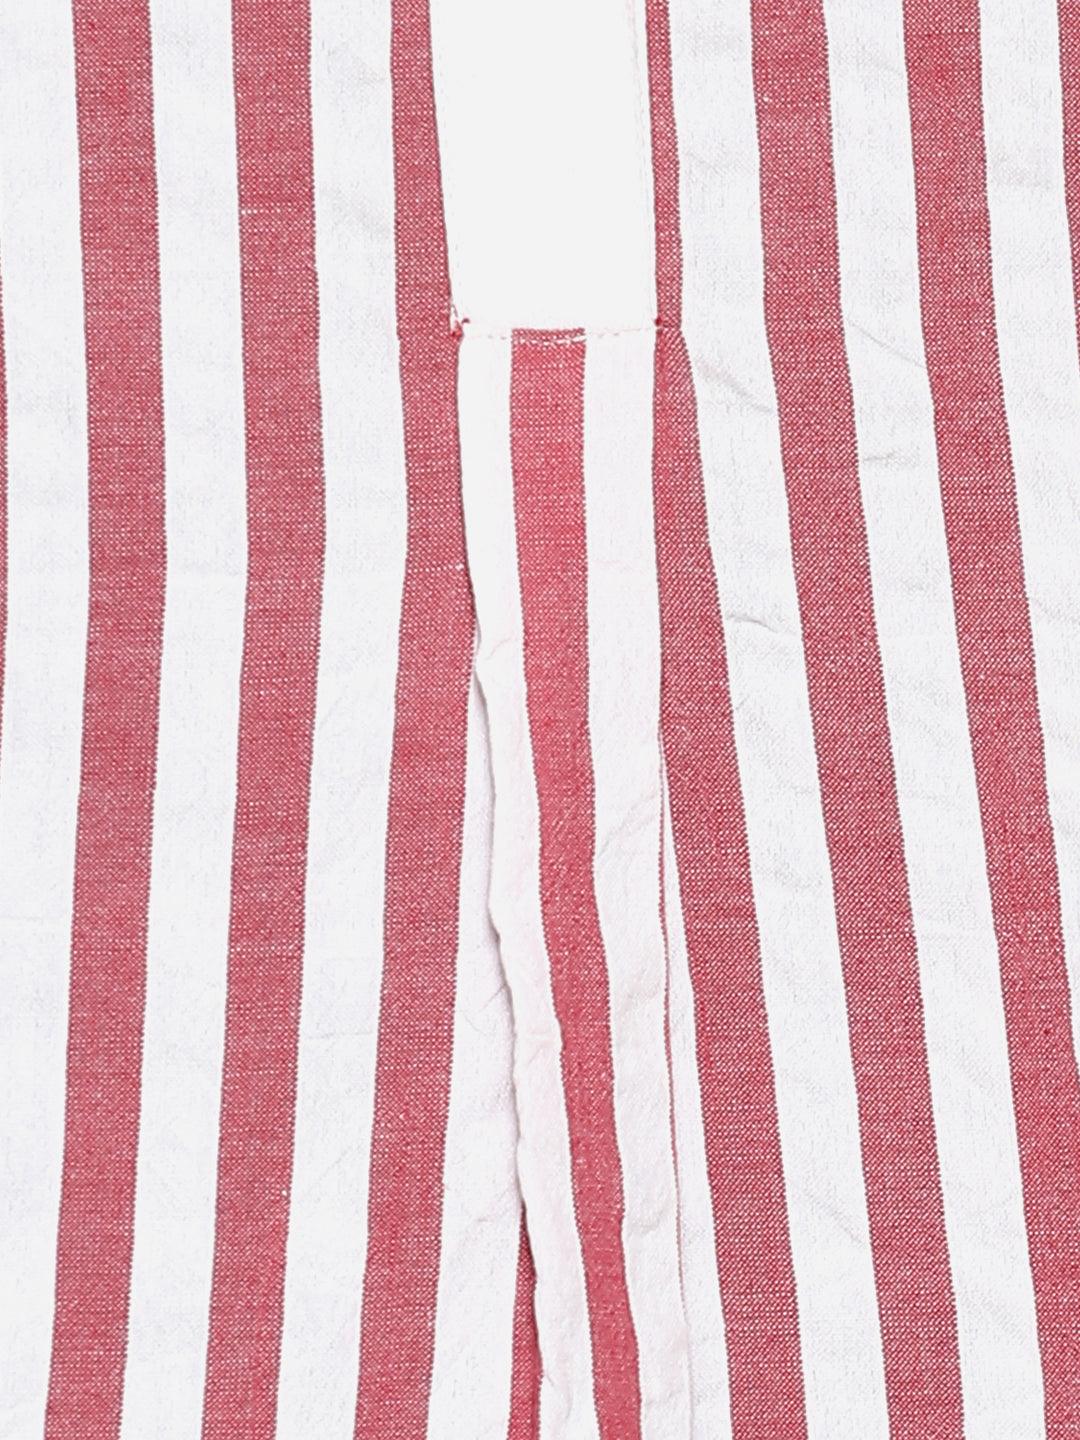 Qurvii Red and white stripe cotton half top - Qurvii India